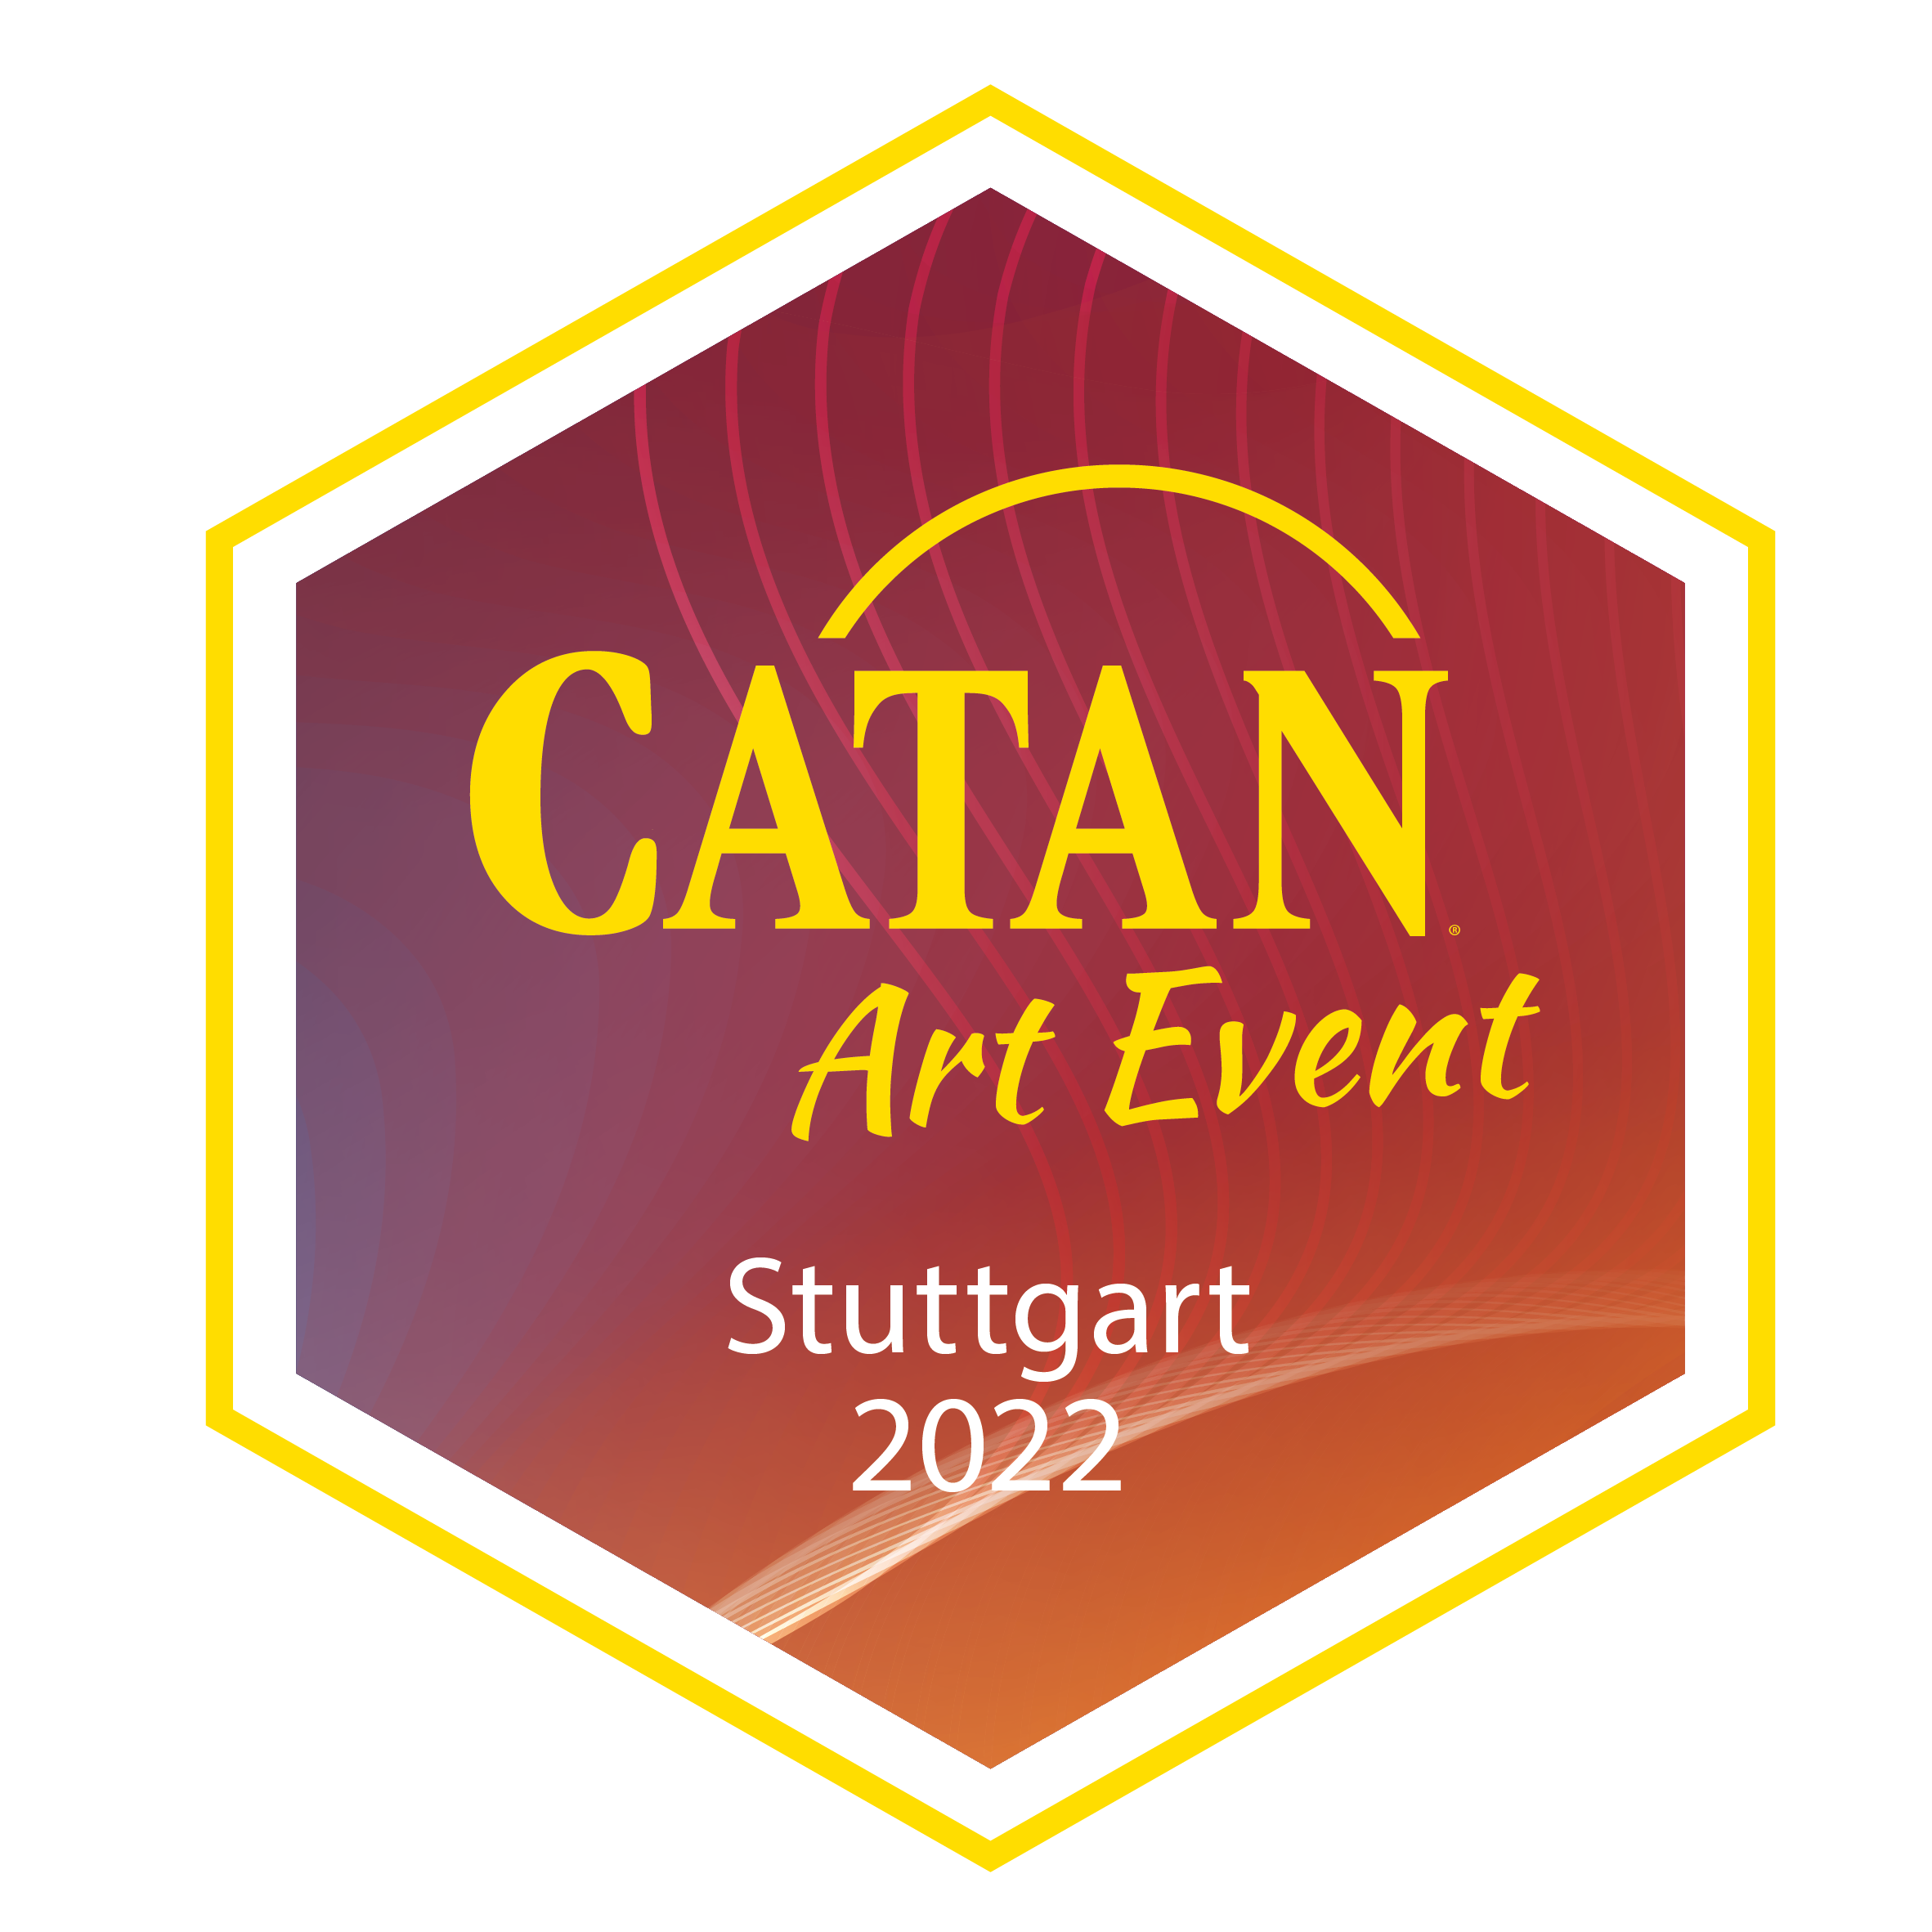 CATAN Art Event Stuttgart 2022